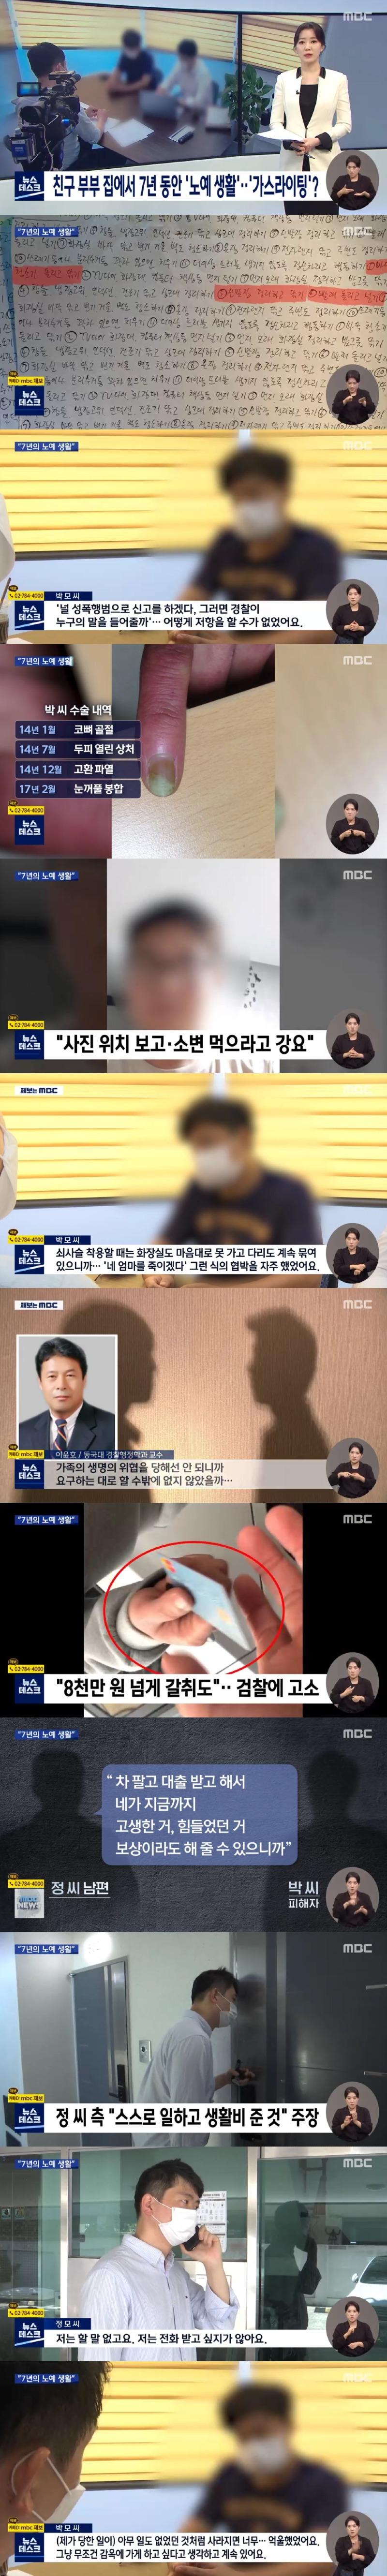 MBC 뉴스 캡쳐본.jpg